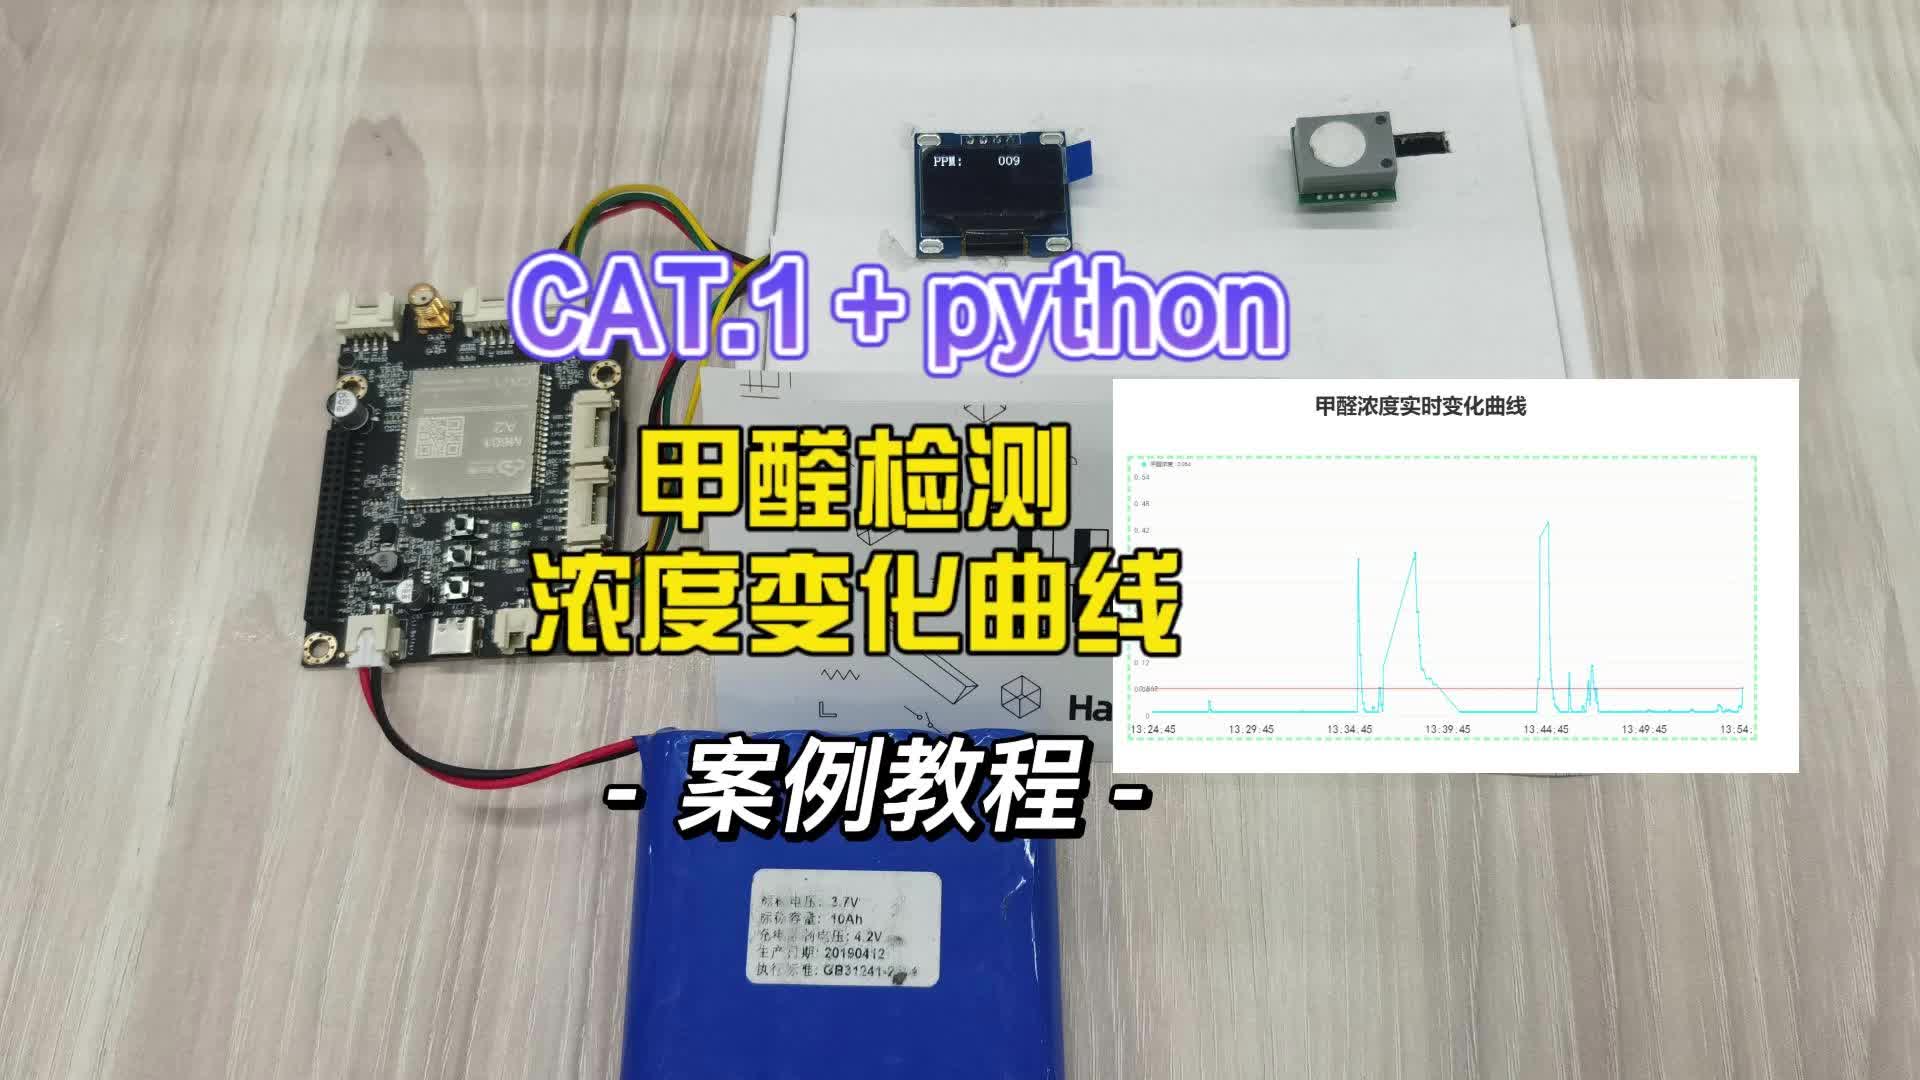 用python寫的甲醛檢測儀，附教程源碼，幫我看看有什么可優化的地方#python開發板 #cat1 